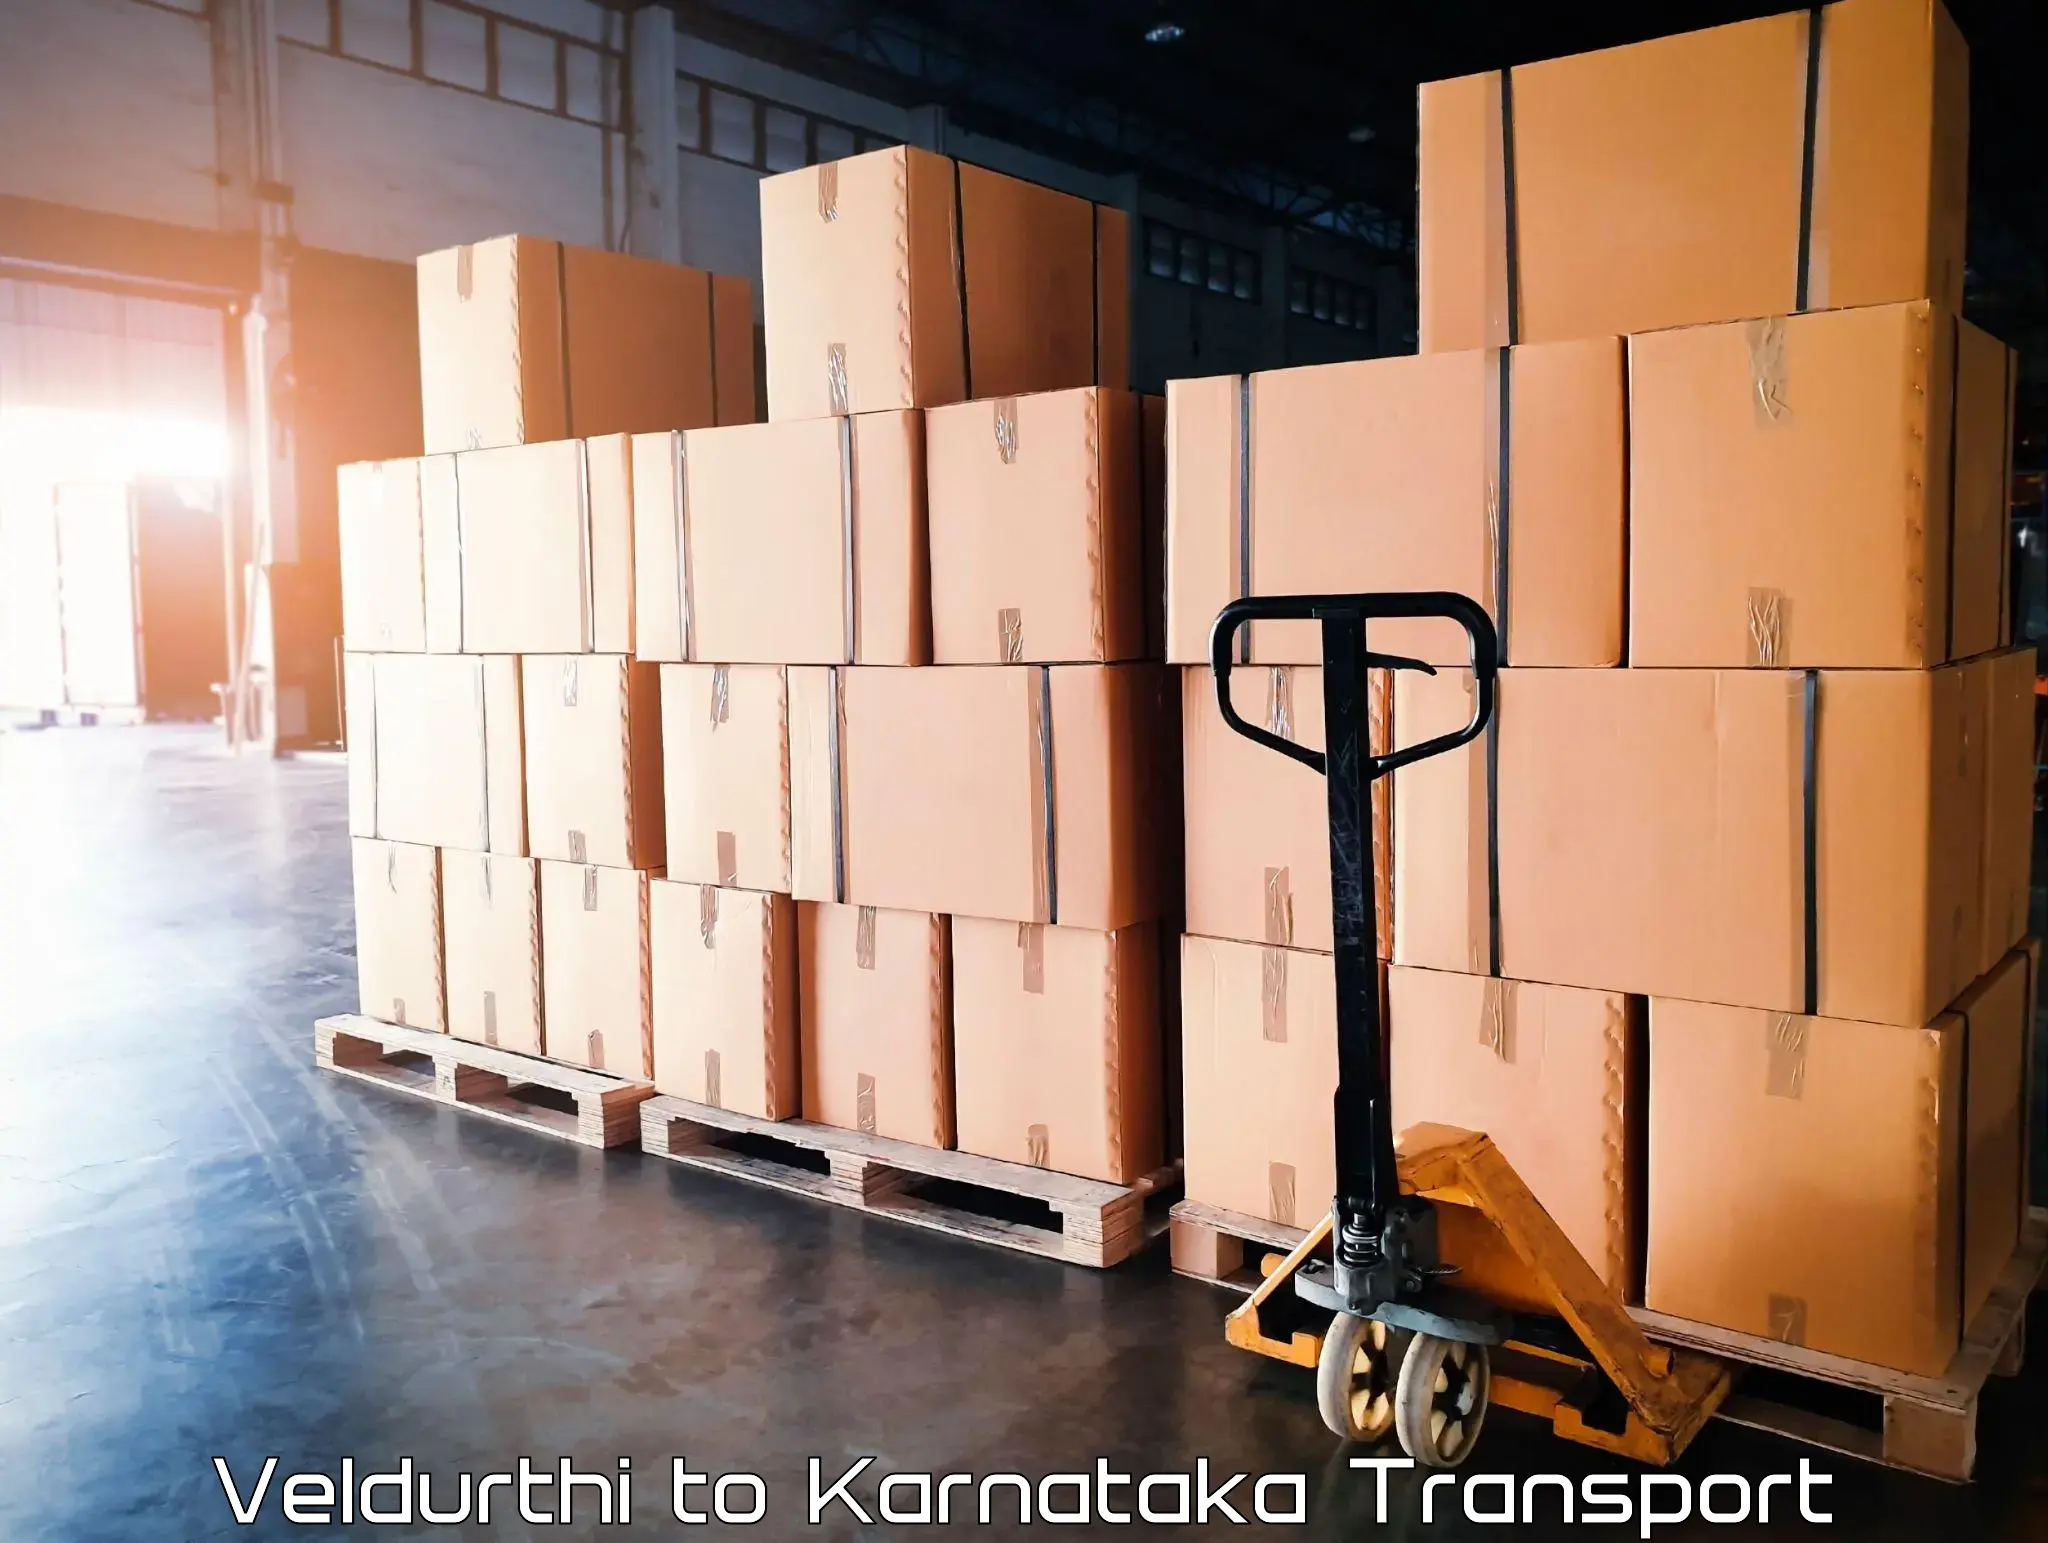 Land transport services Veldurthi to Sedam